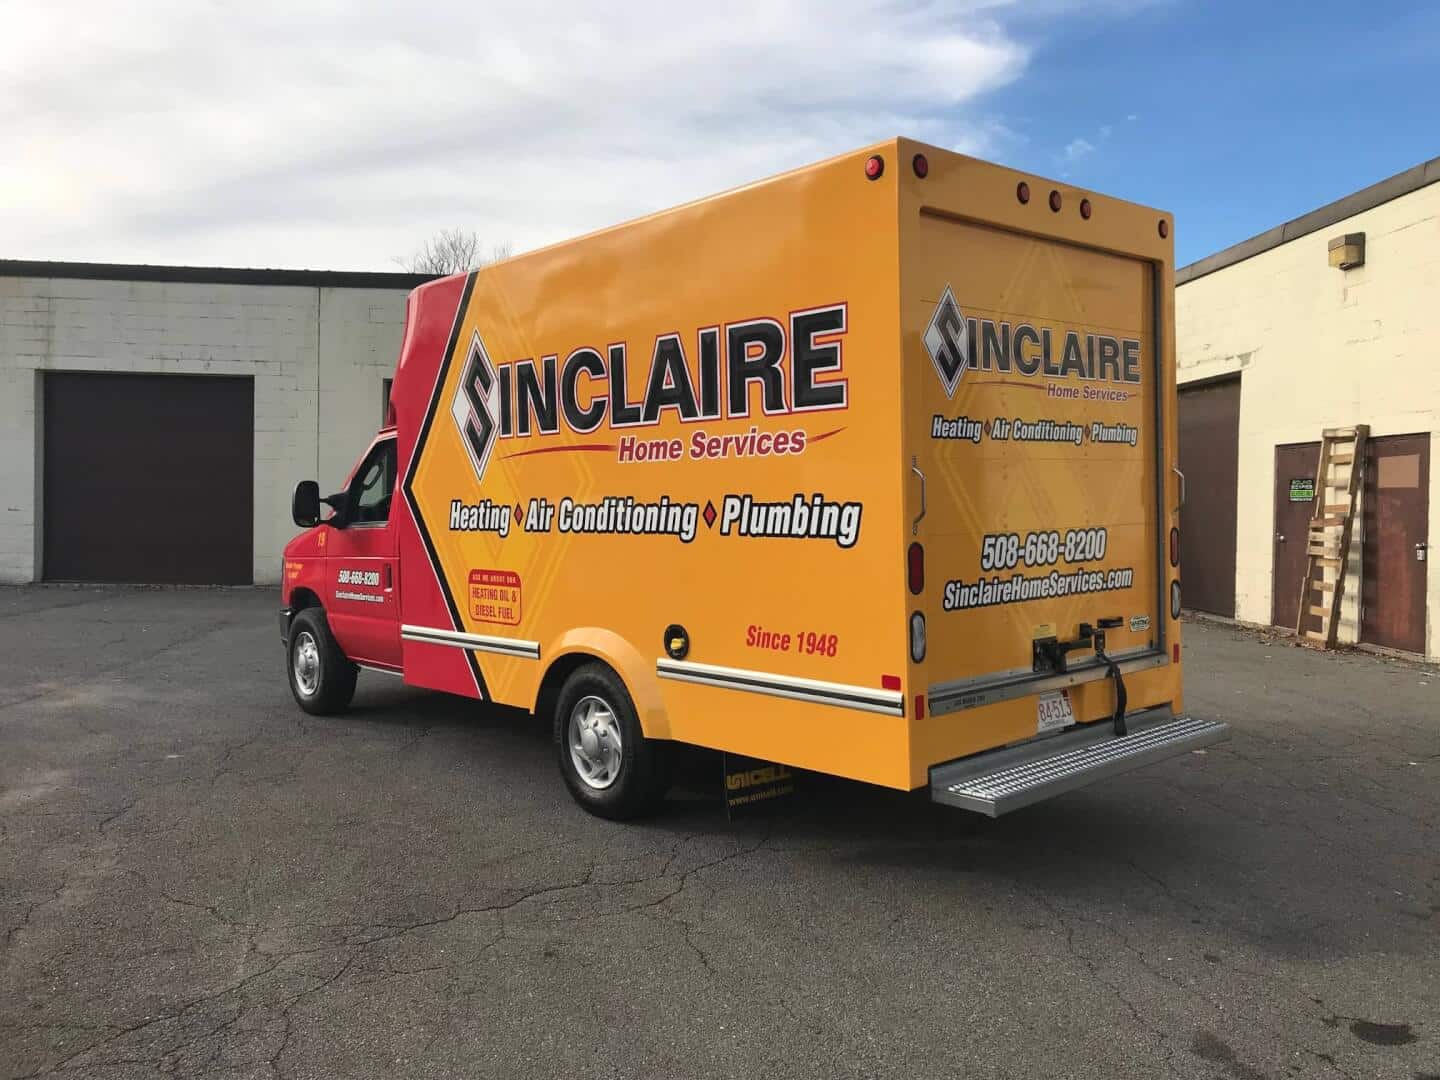 A Sinclaire Van